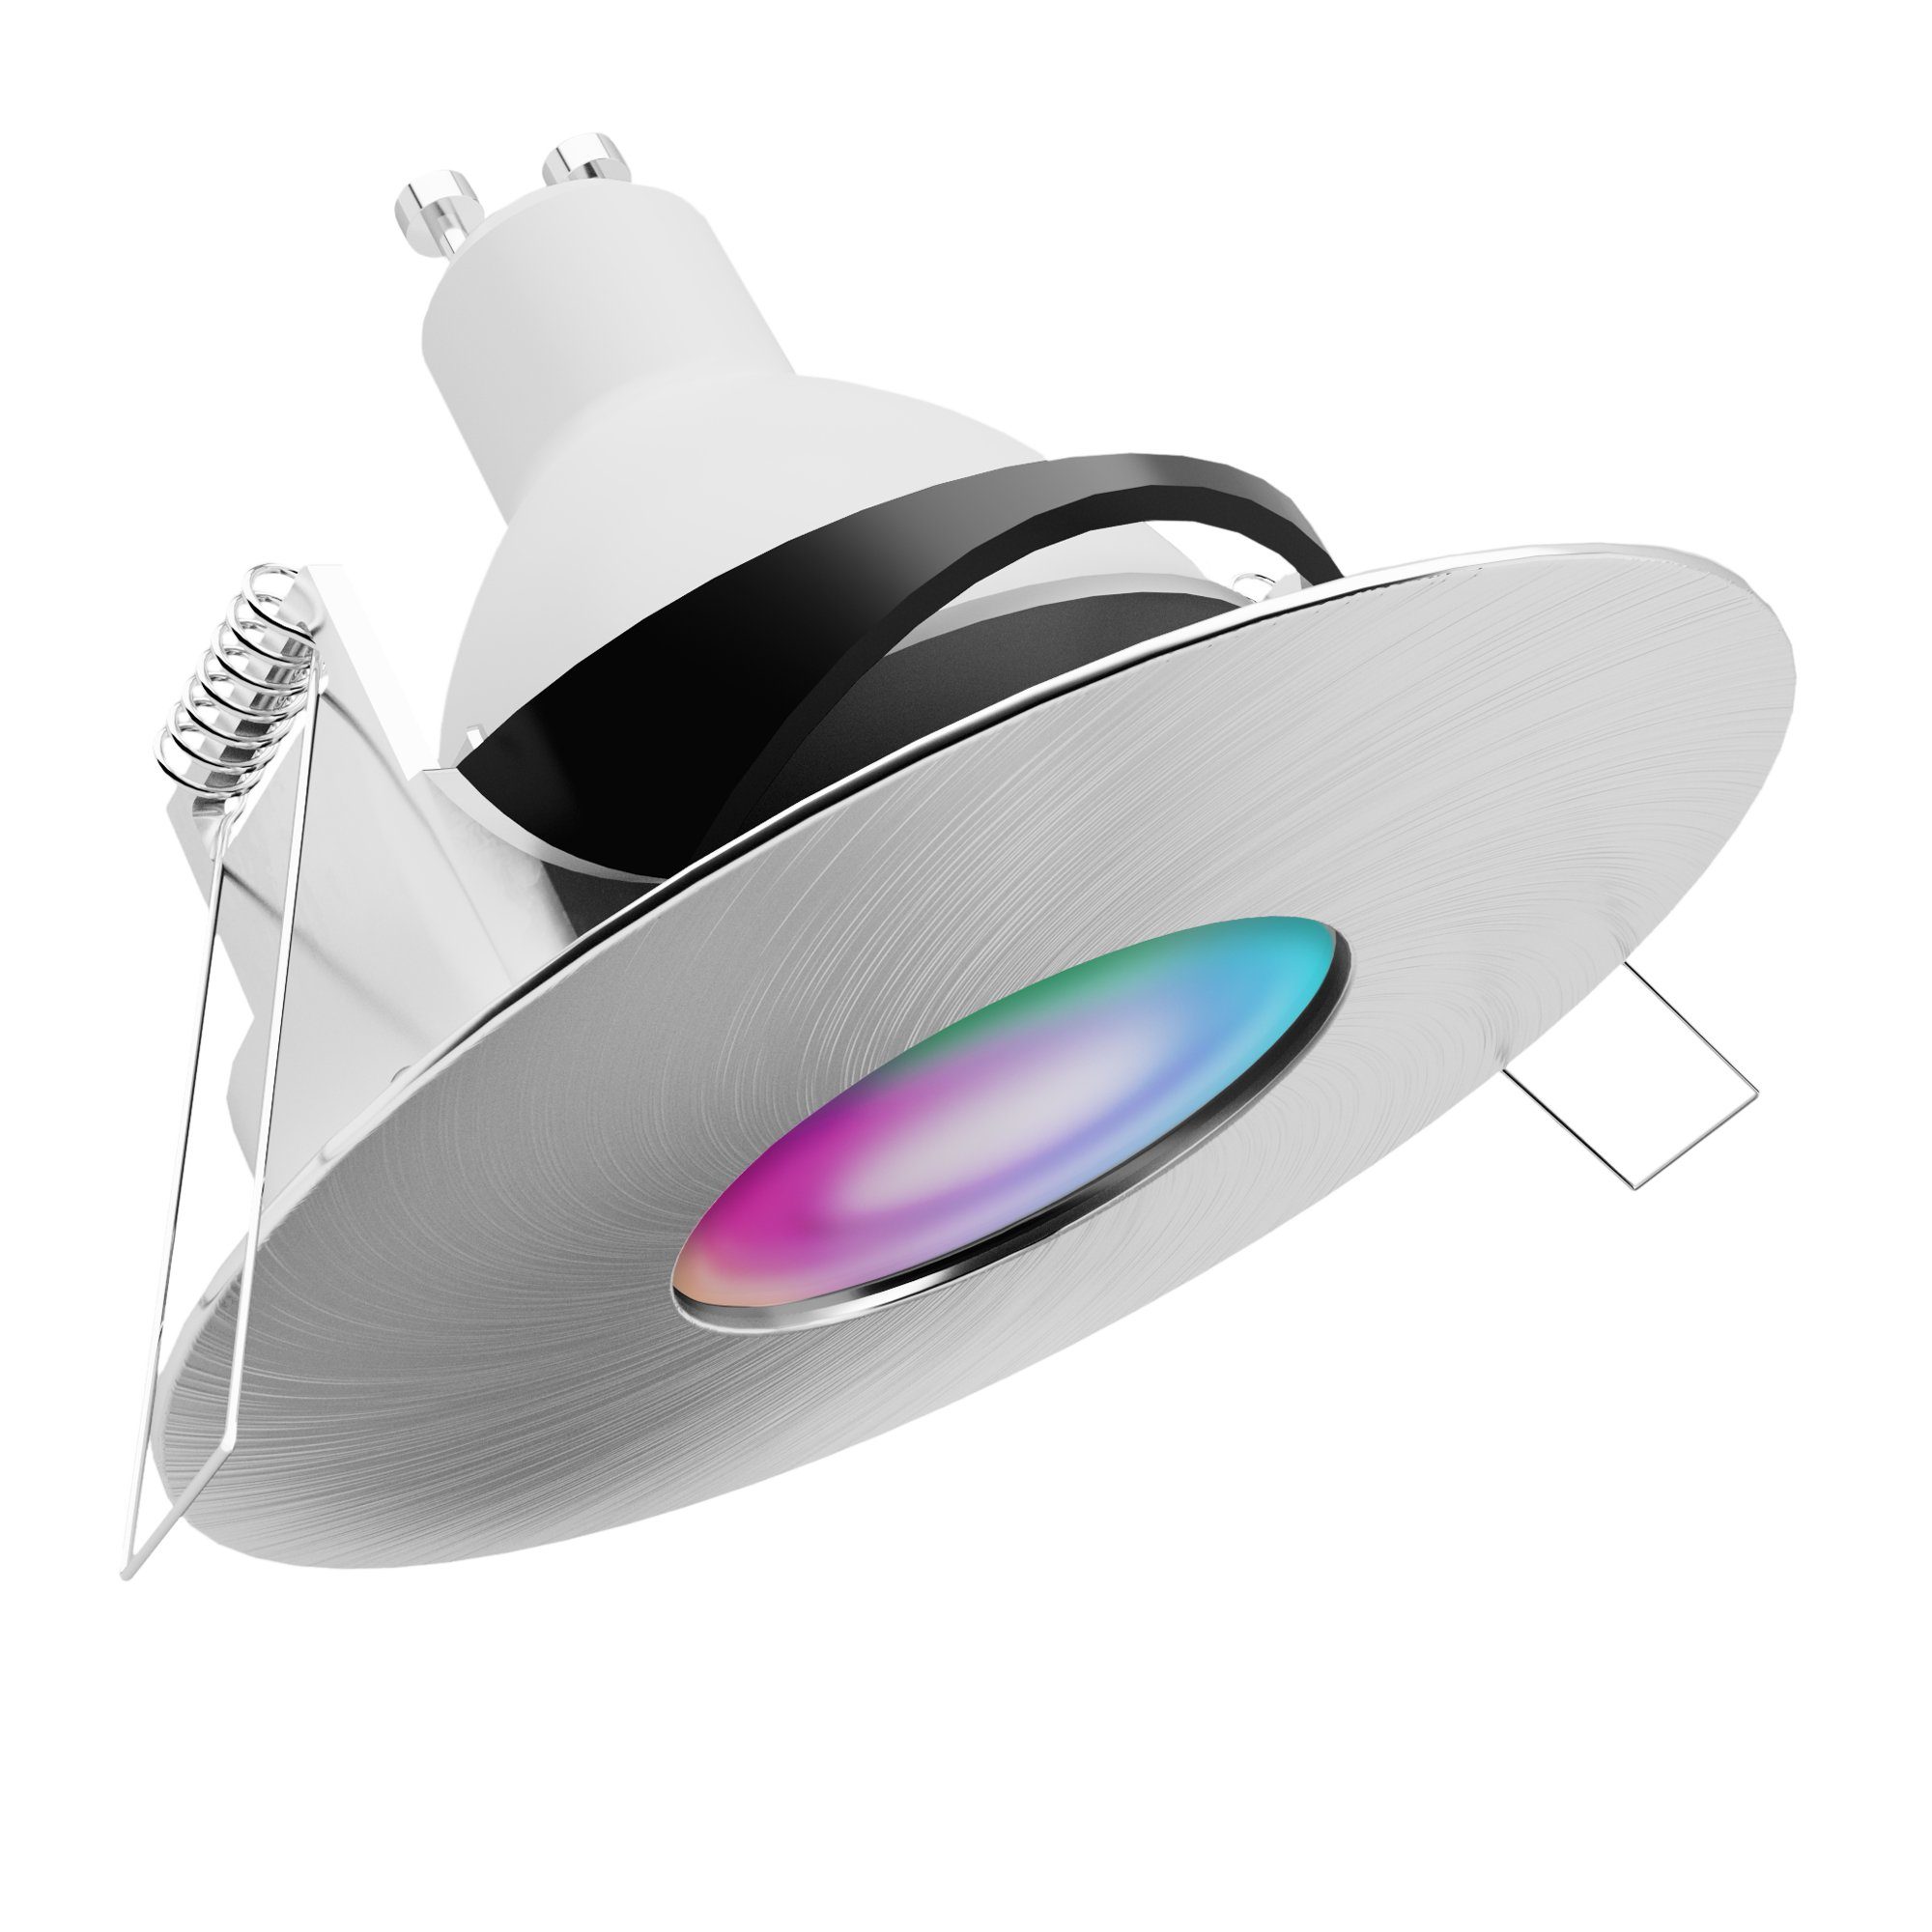 mit RGB YOKU GU10 Einbauspot rund Außen-Deckenleuchte silber schwenkbar WLAN LED, SSC-LUXon RGB IP65